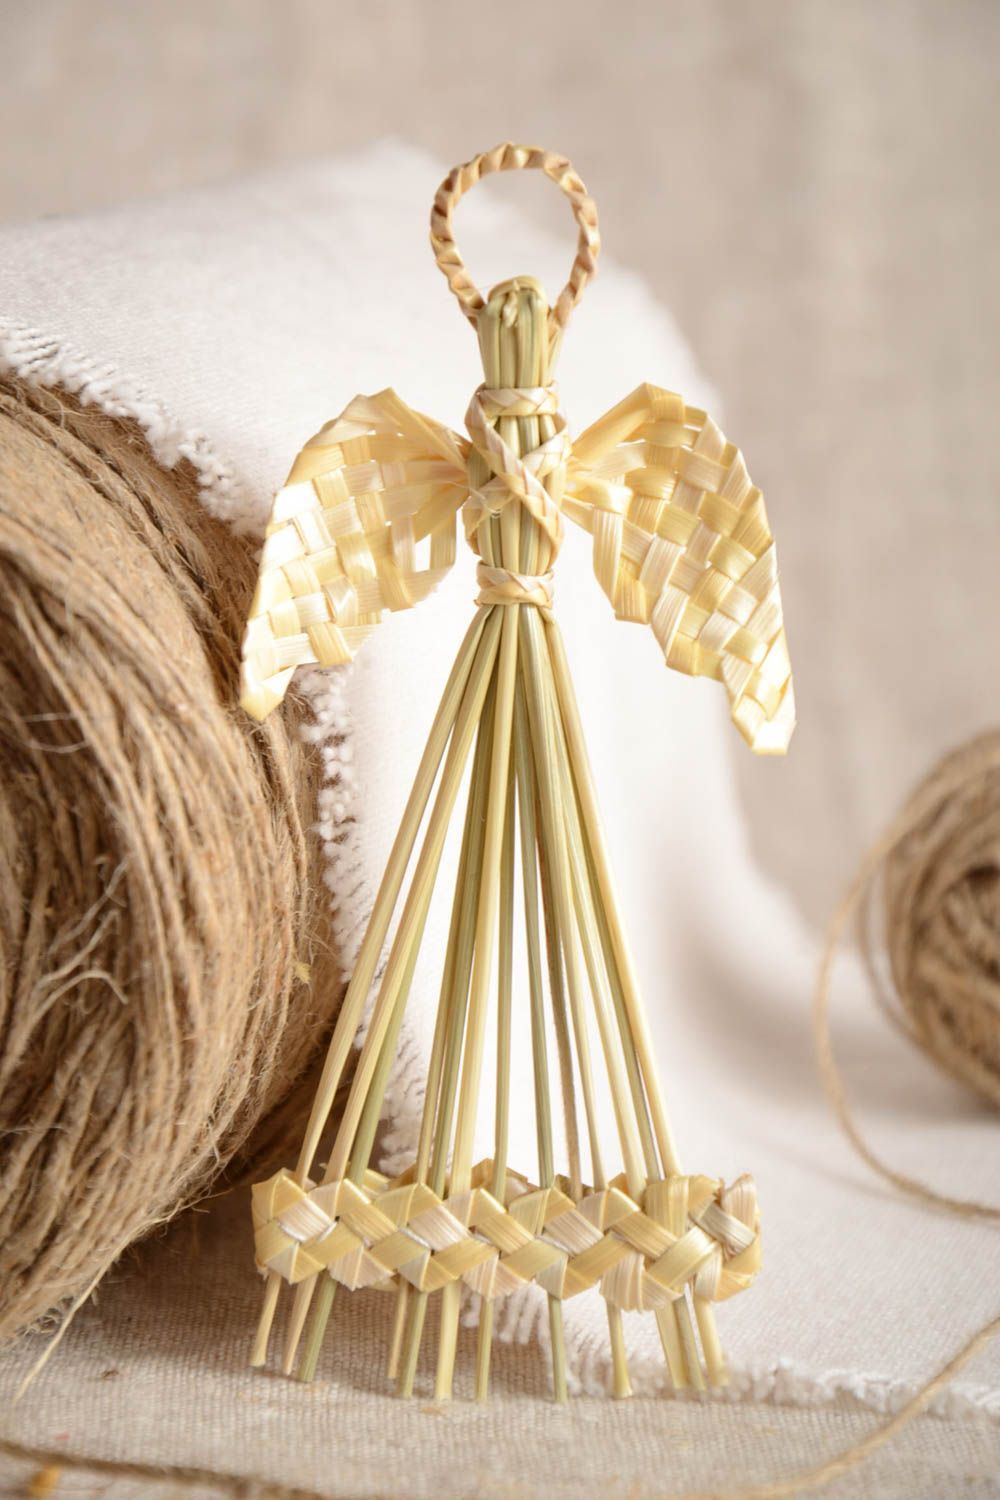 Интерьерная подвеска плетеная из соломы в виде ангела ручной работы украшение фото 1